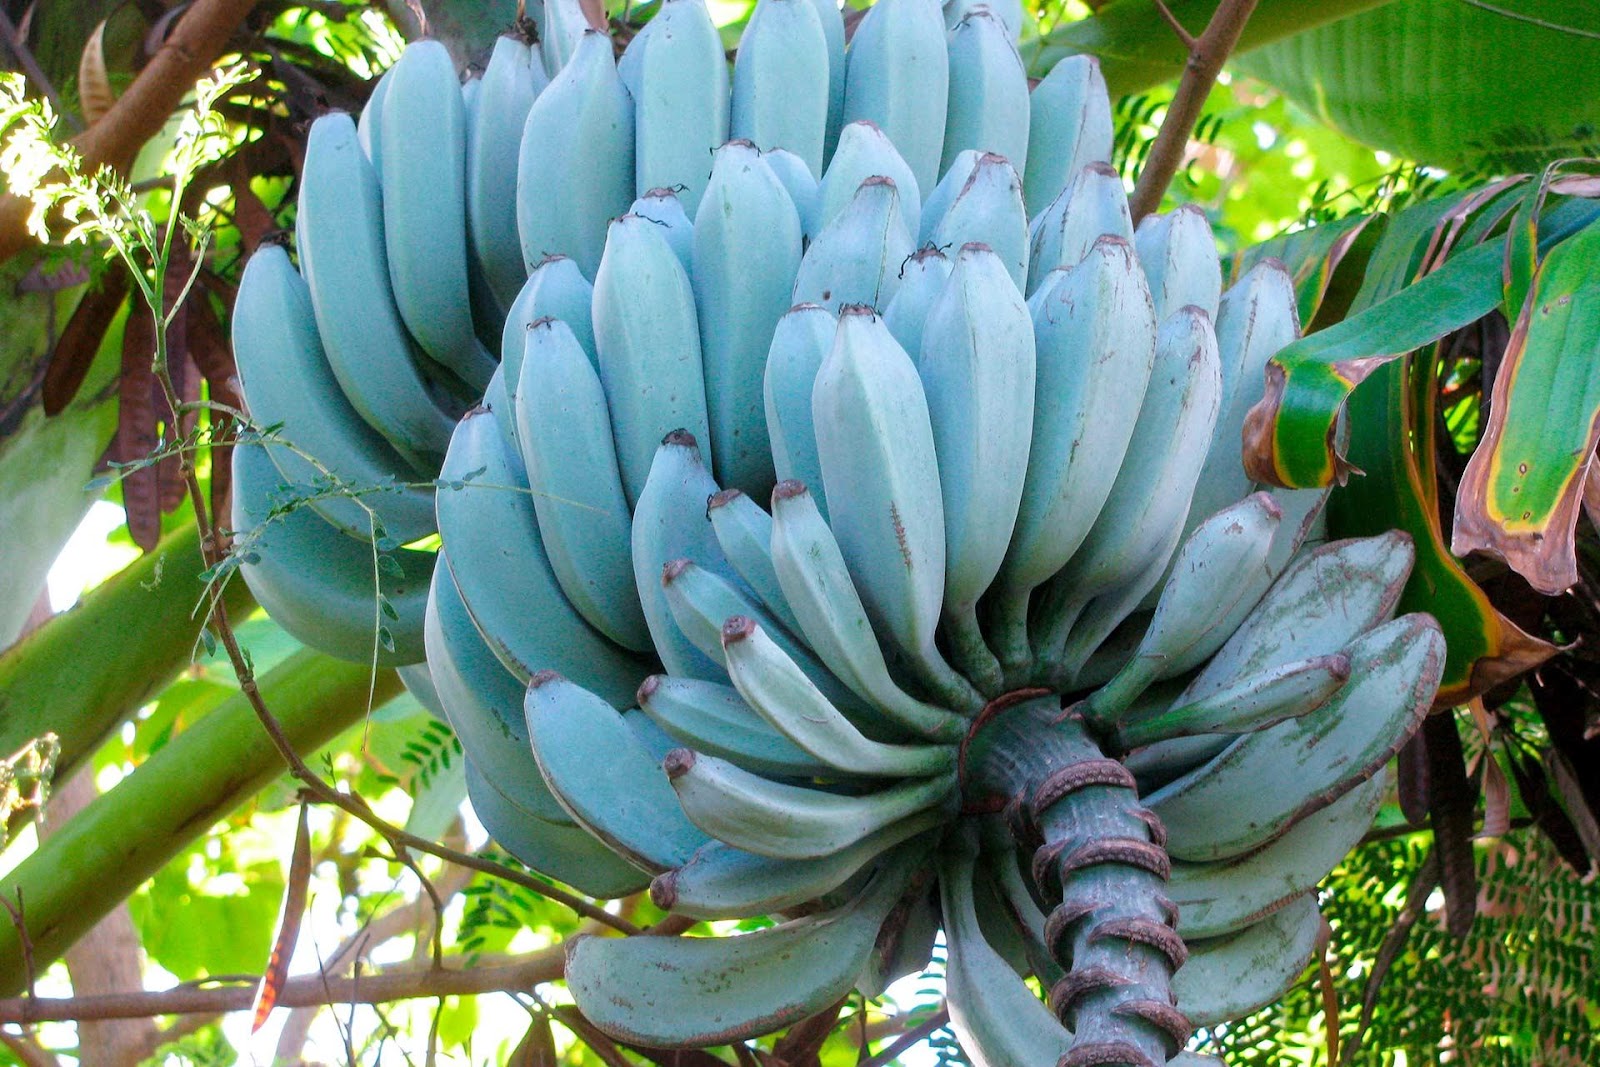 Blue Java Bananas on the tree.